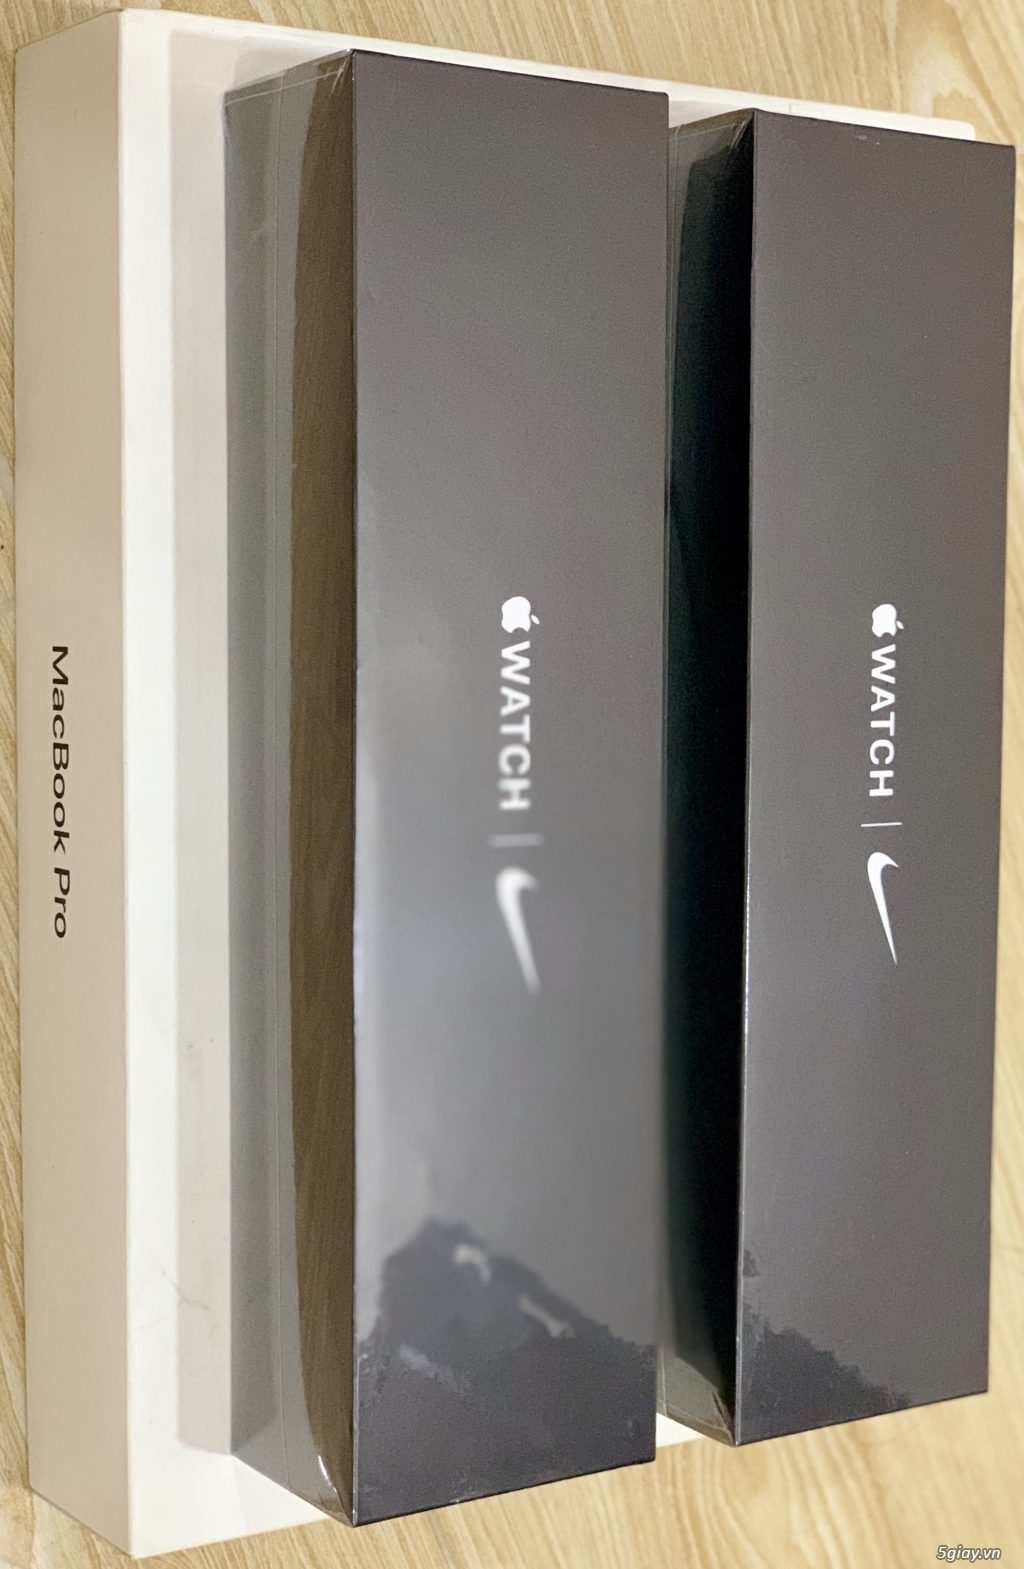 # BÁN Apple watch NIKE series 5 Gray Alu LTE hàng mỹ full box - 2